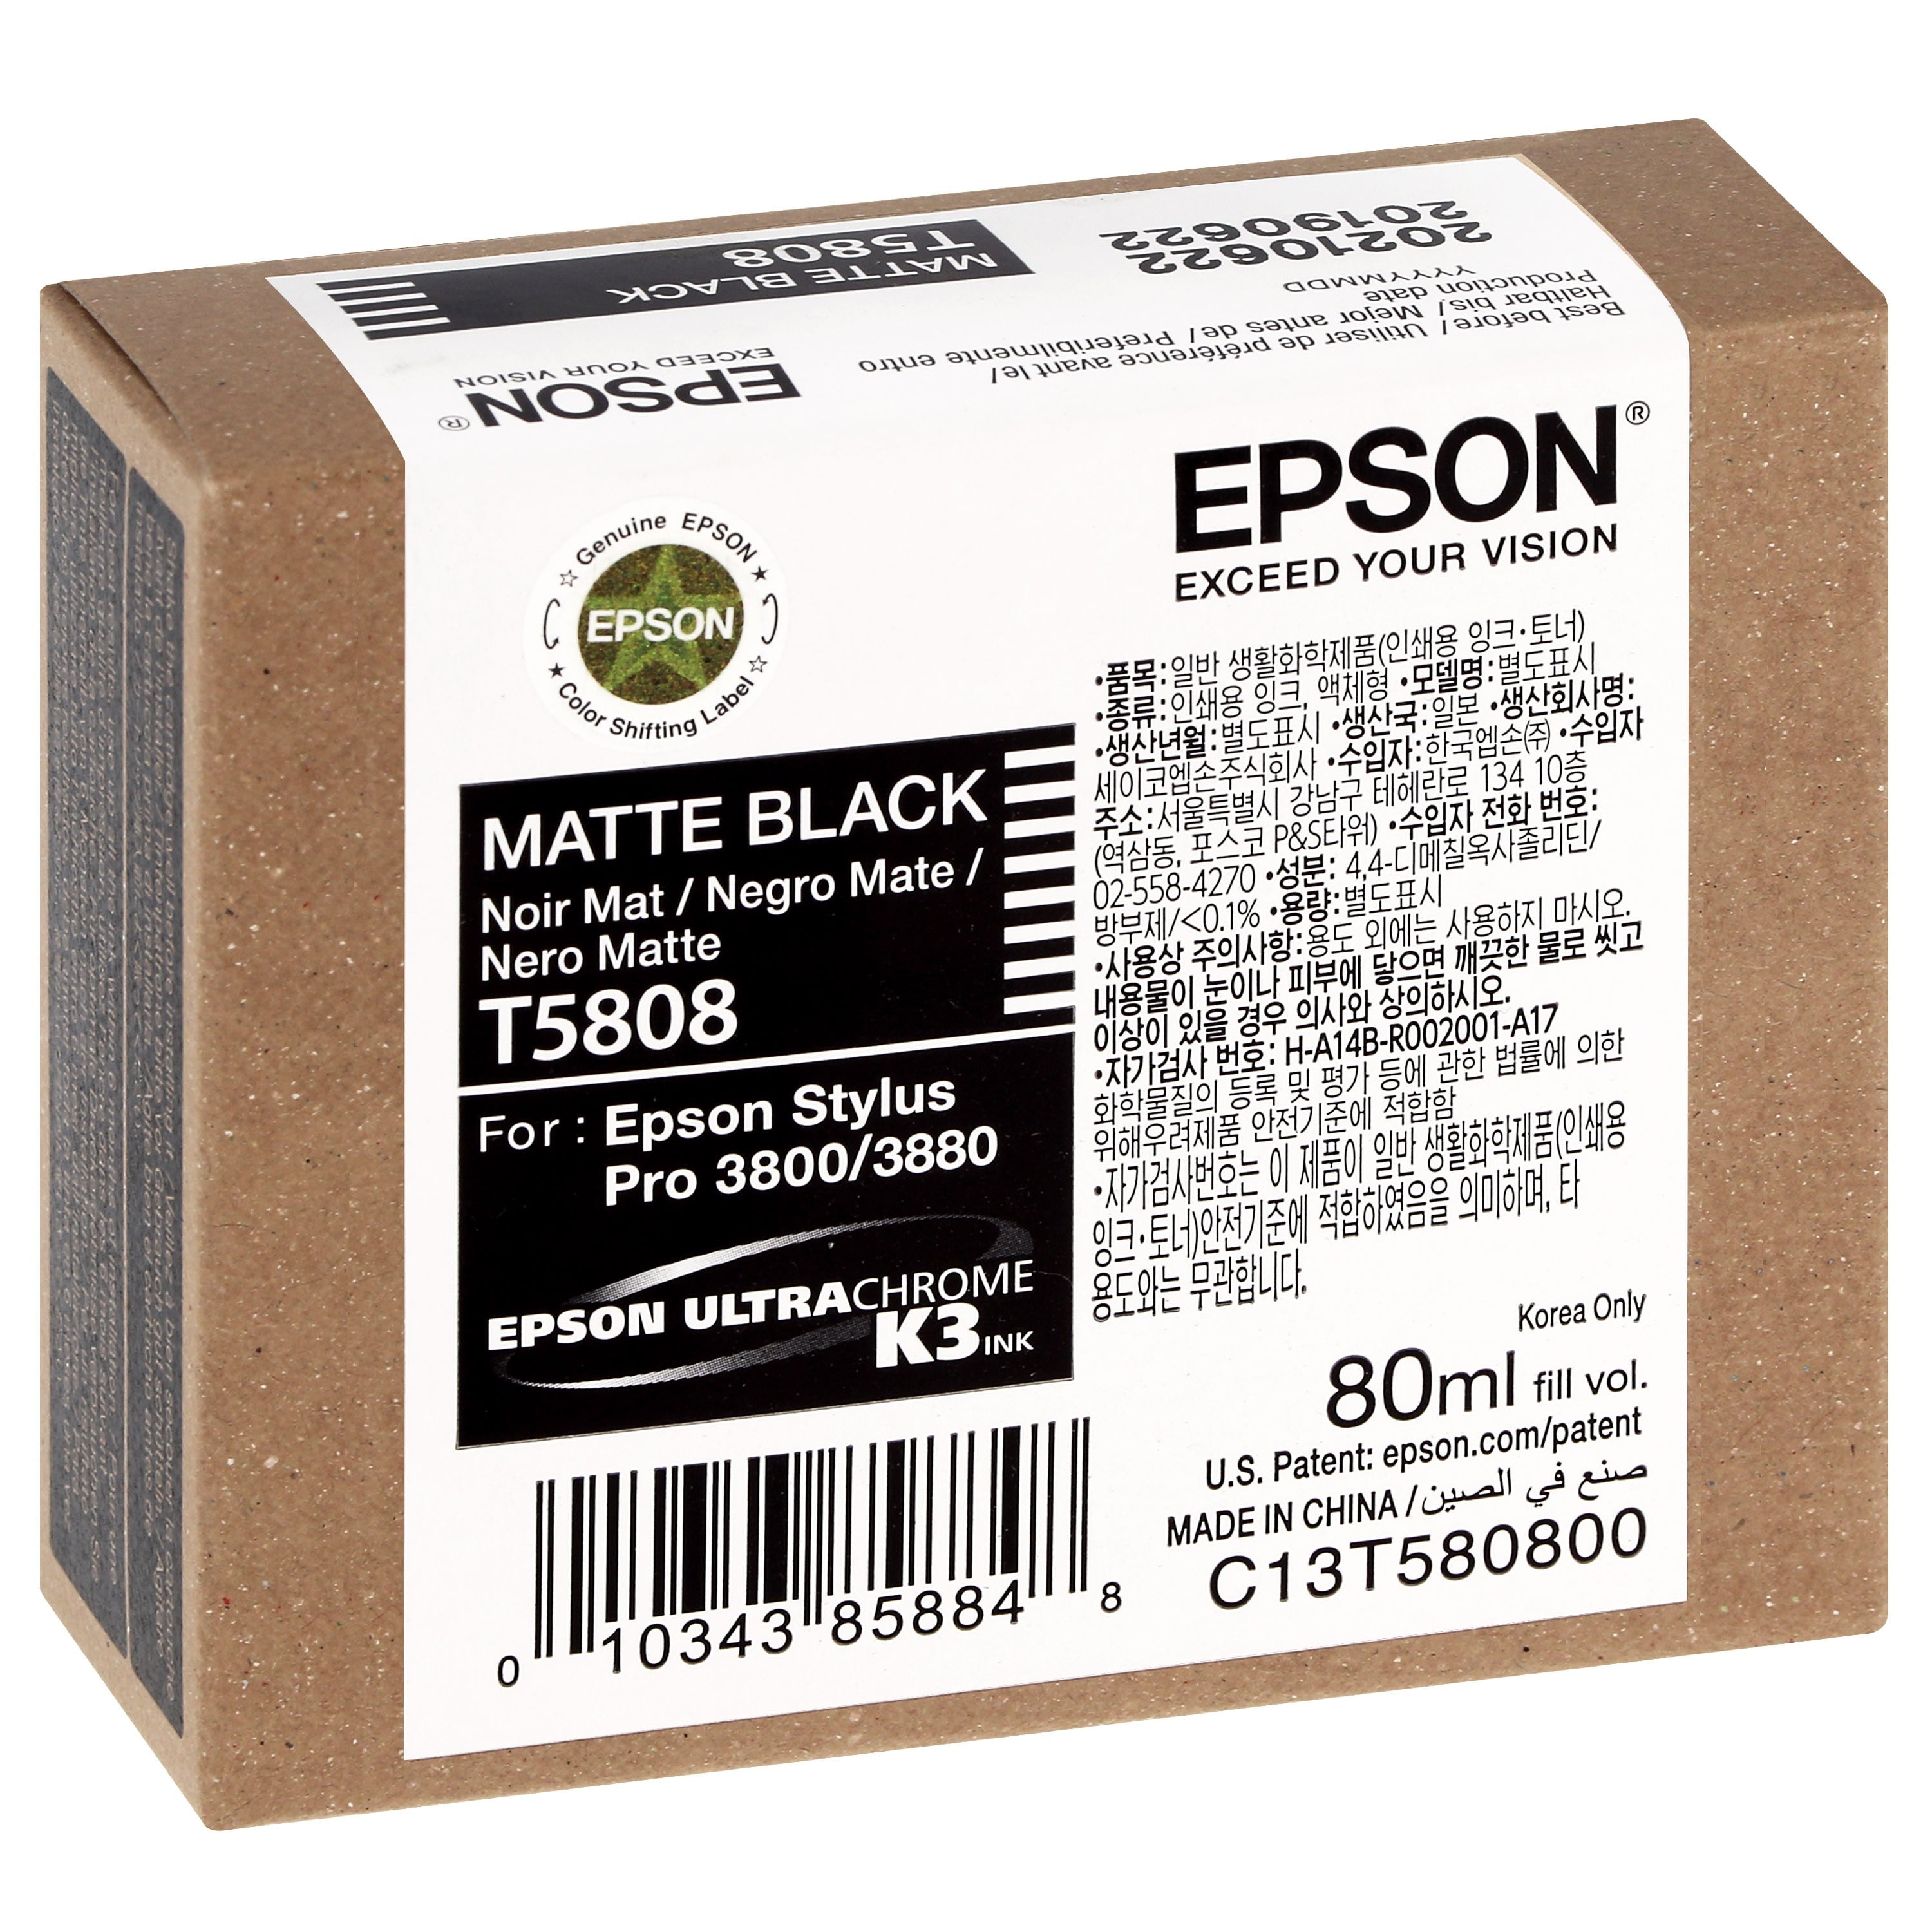 EPSON - Cartouche d'encre traceur T5808 Pour imprimante 3800/3880 Noir mat - 80 ml